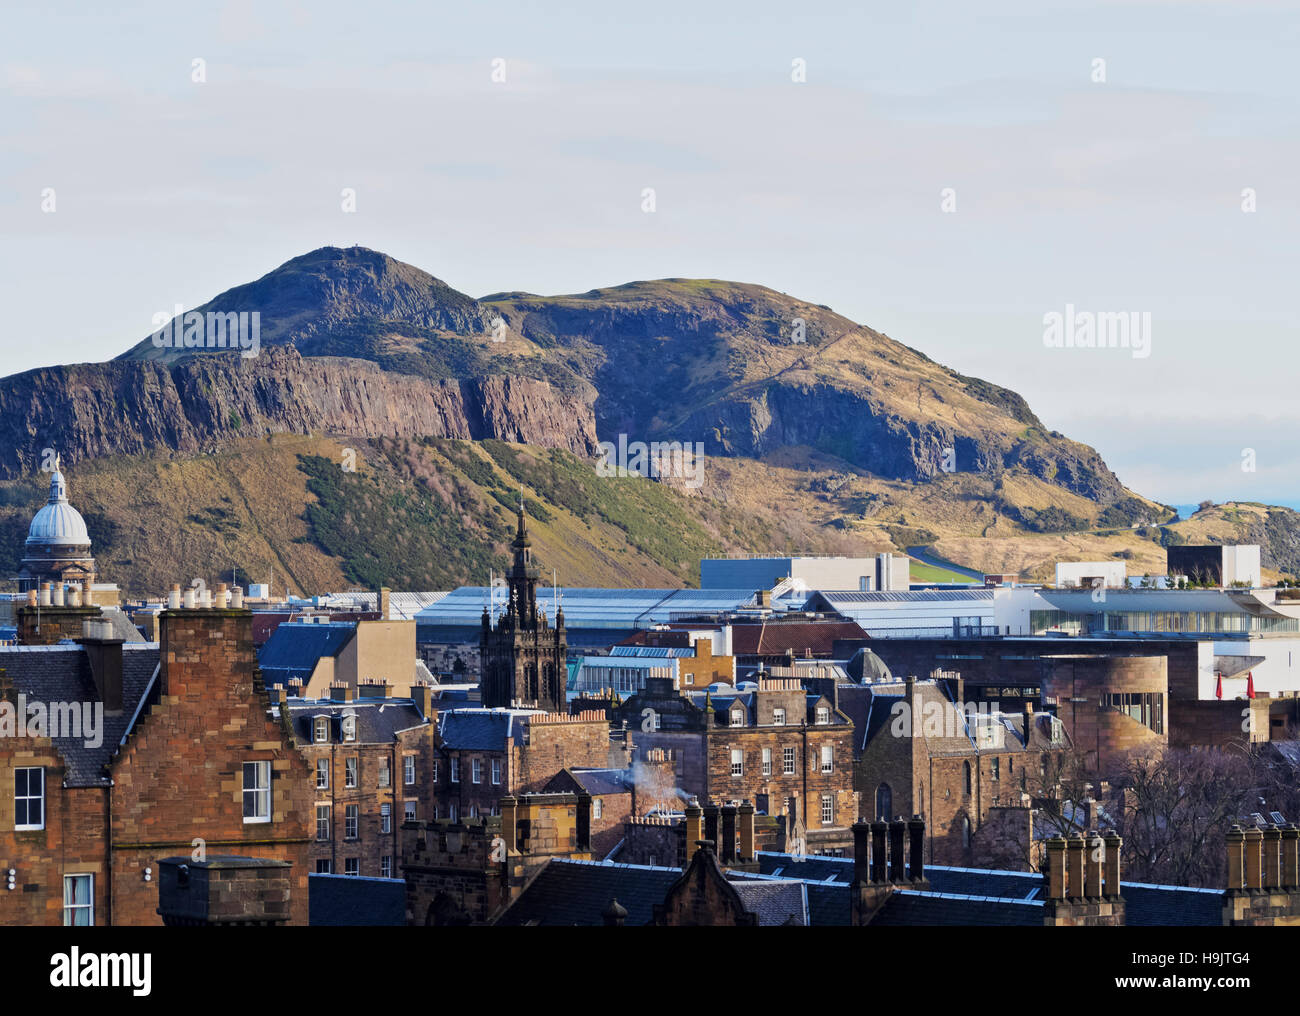 Reino Unido, Escocia, Lothian, Edimburgo, ciudad antigua vista desde el Castillo de Edimburgo. Foto de stock